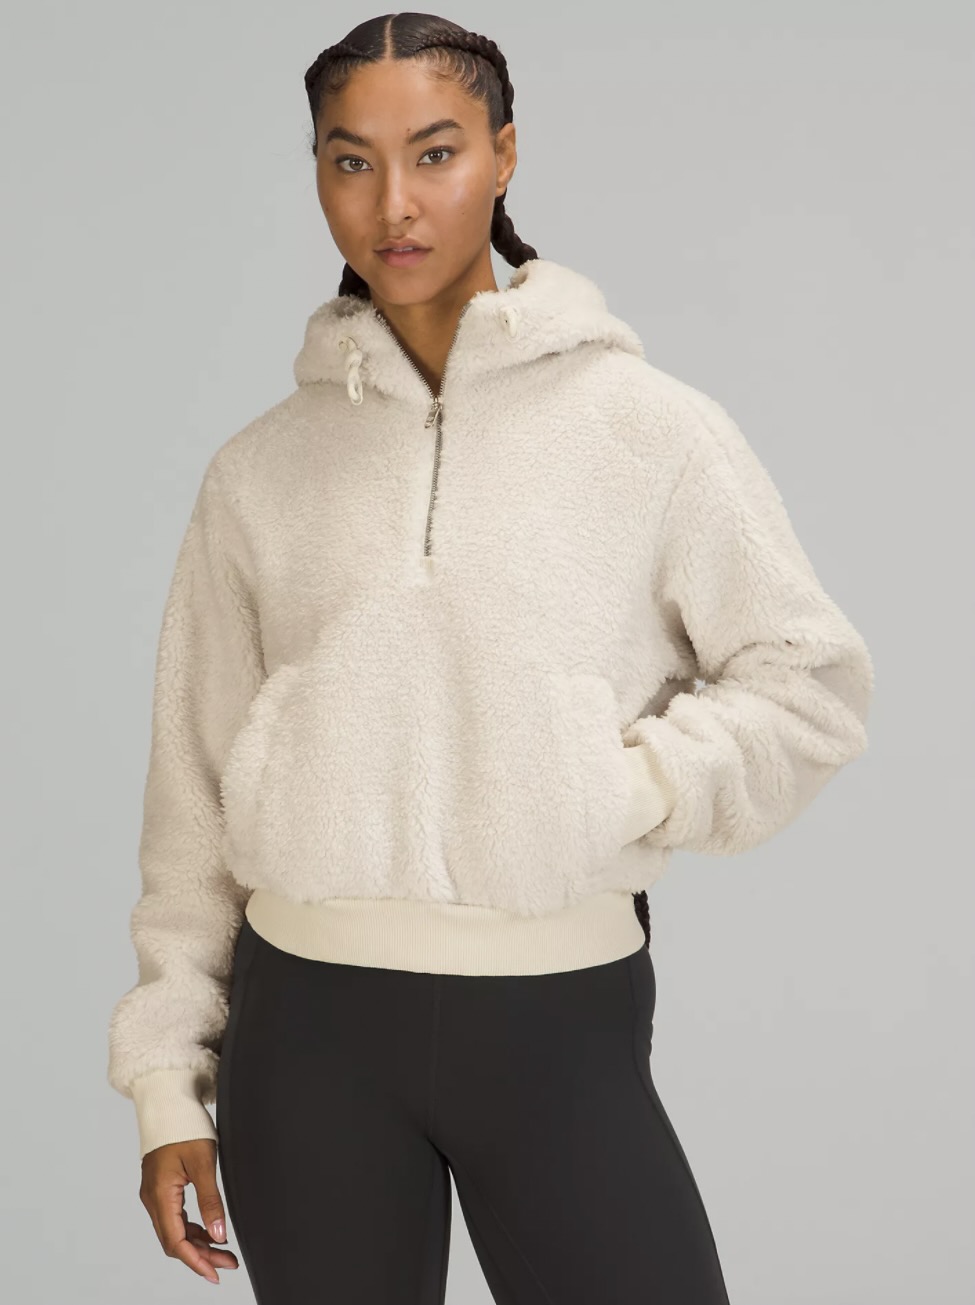 Fleece sweater from lululemon